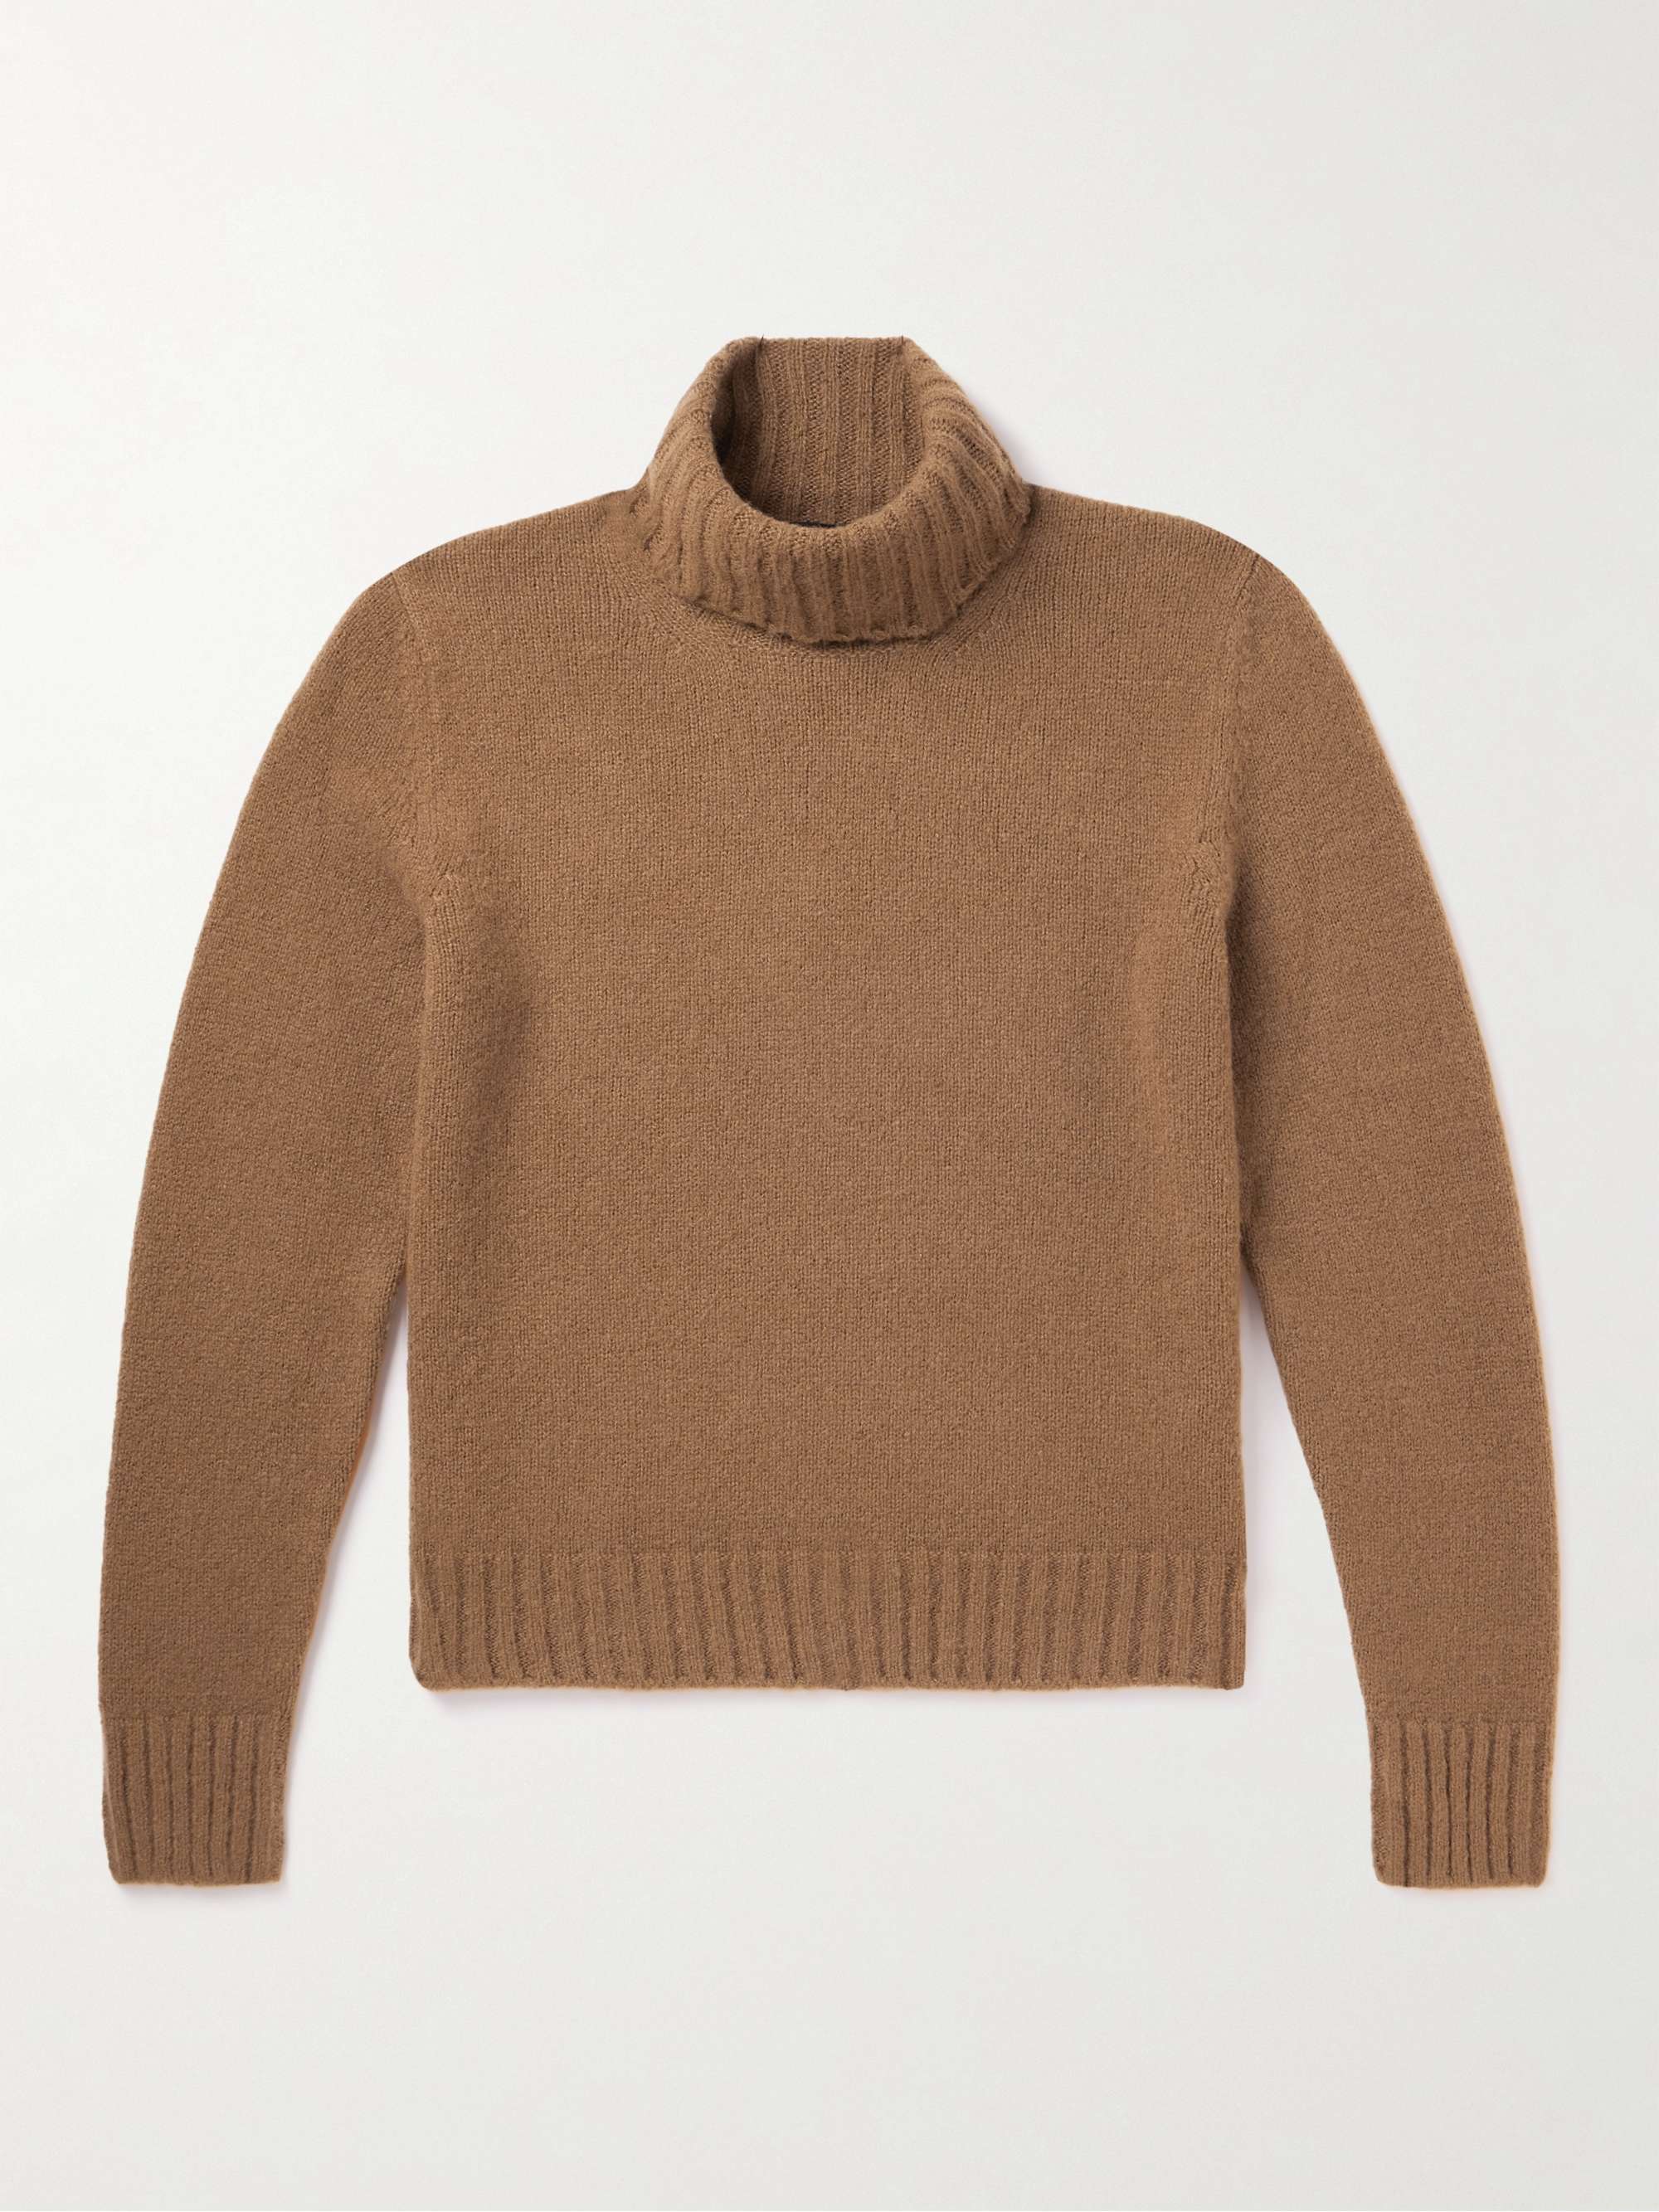 TOM FORD Slim-Fit Cashmere-Blend Rollneck Sweater for Men | MR PORTER